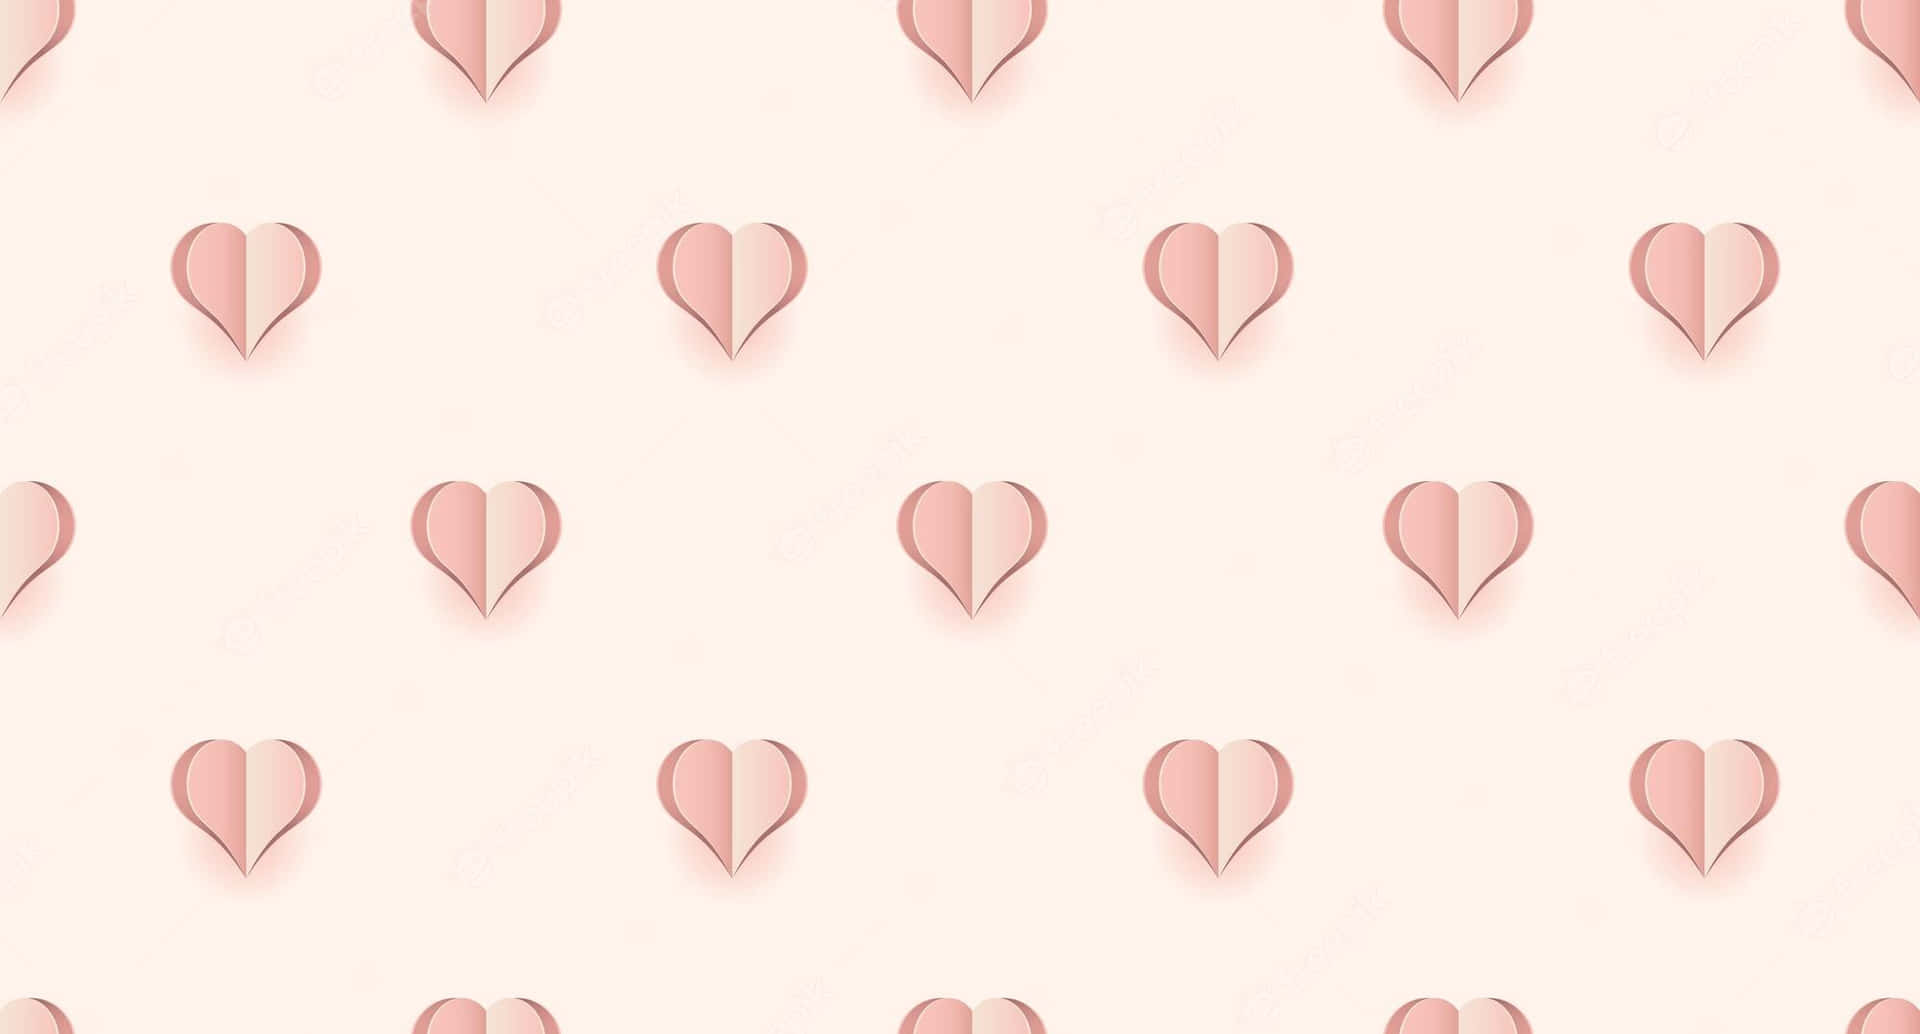 Lad dit hjerte skille med sukkercoatet kærlighed! Wallpaper